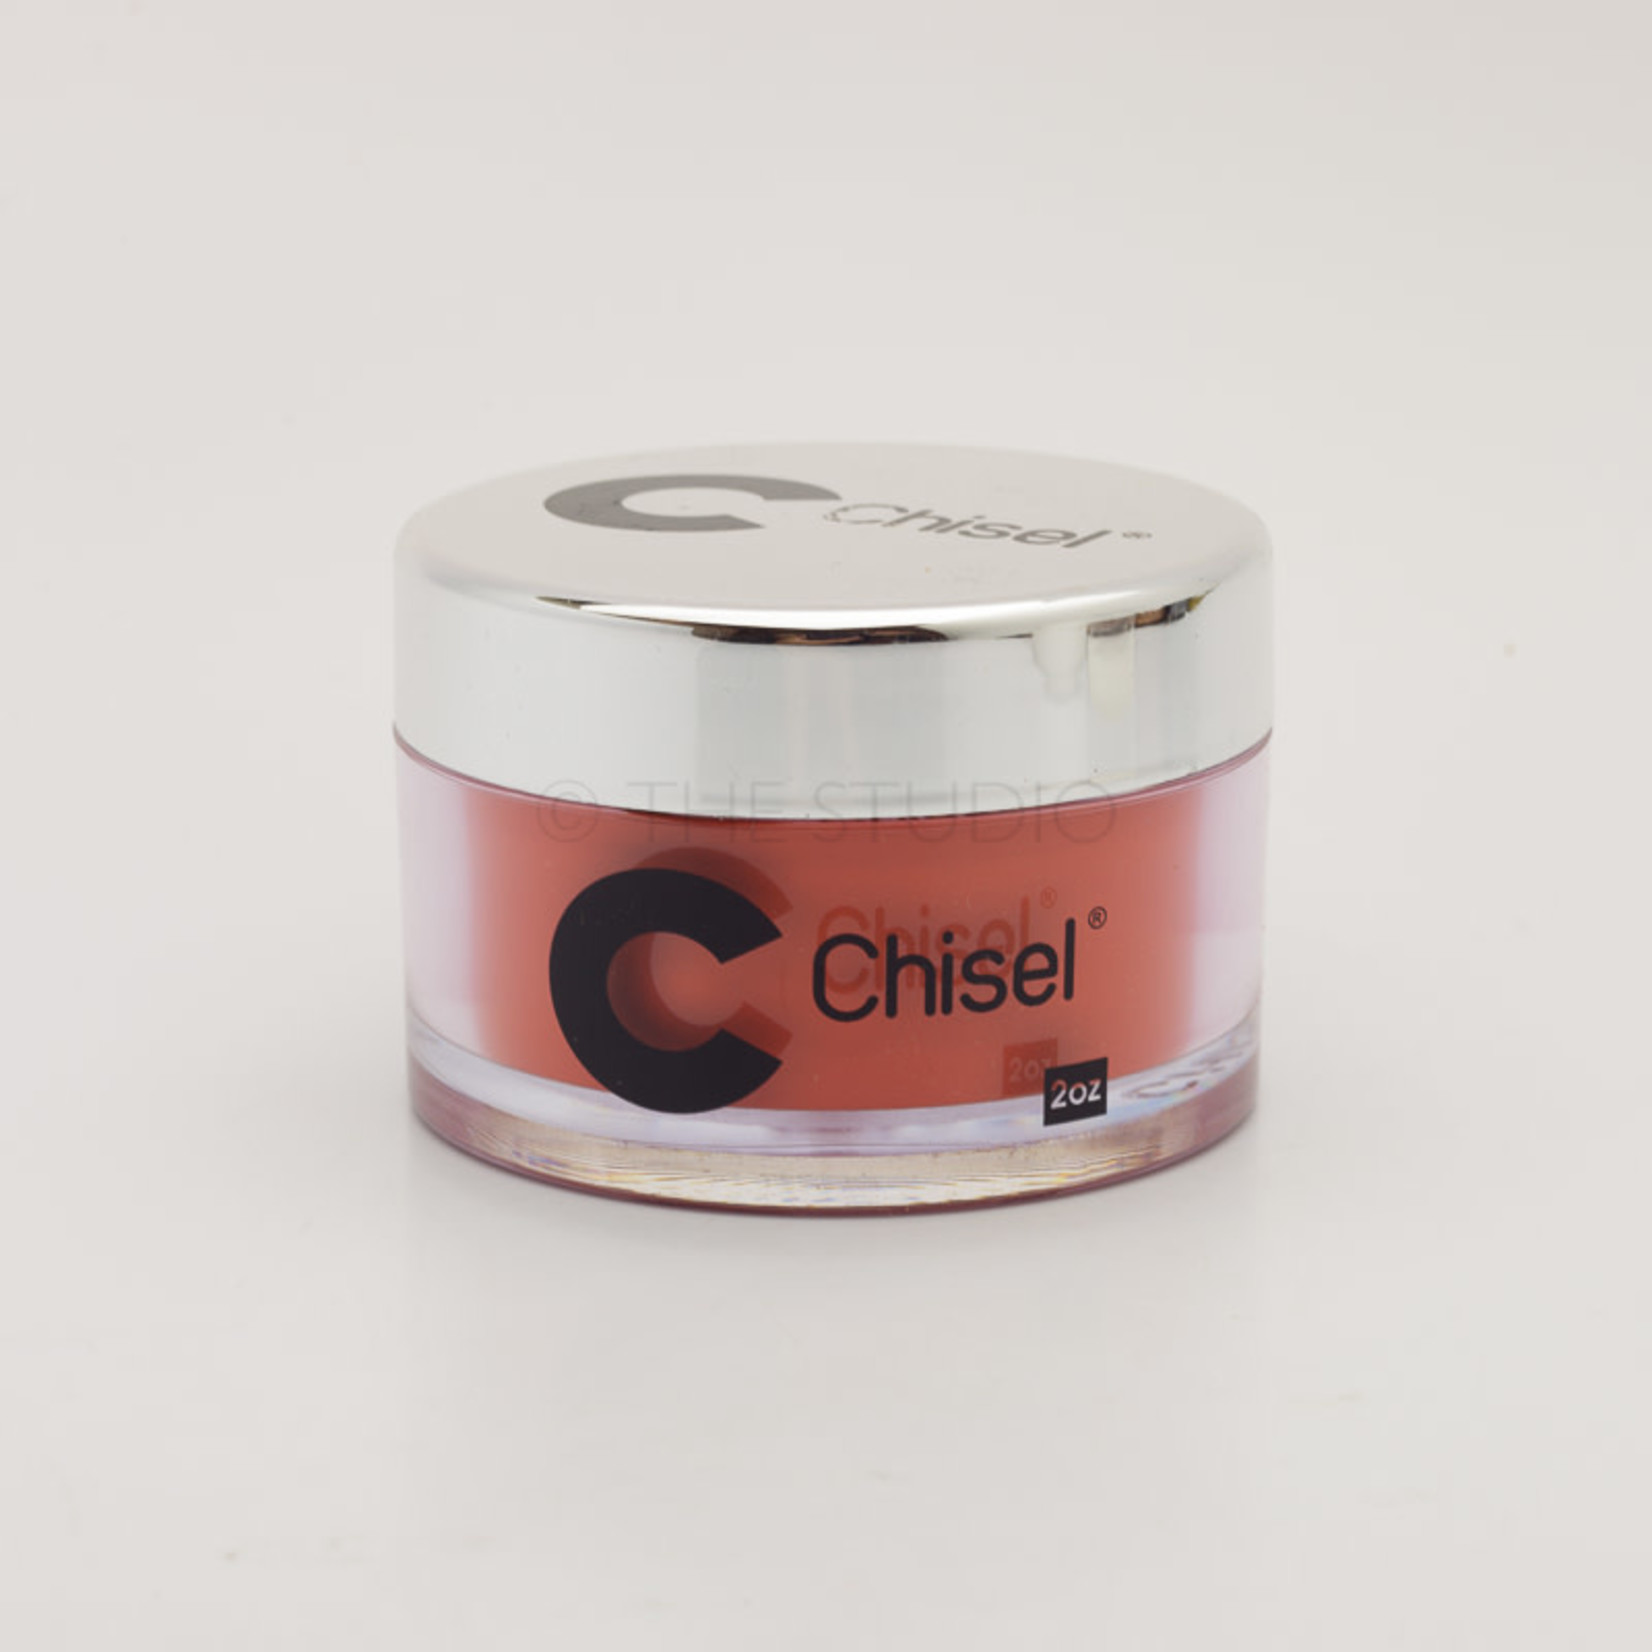 Chisel Chisel - Solid 003 - AIO Powder - 2 oz